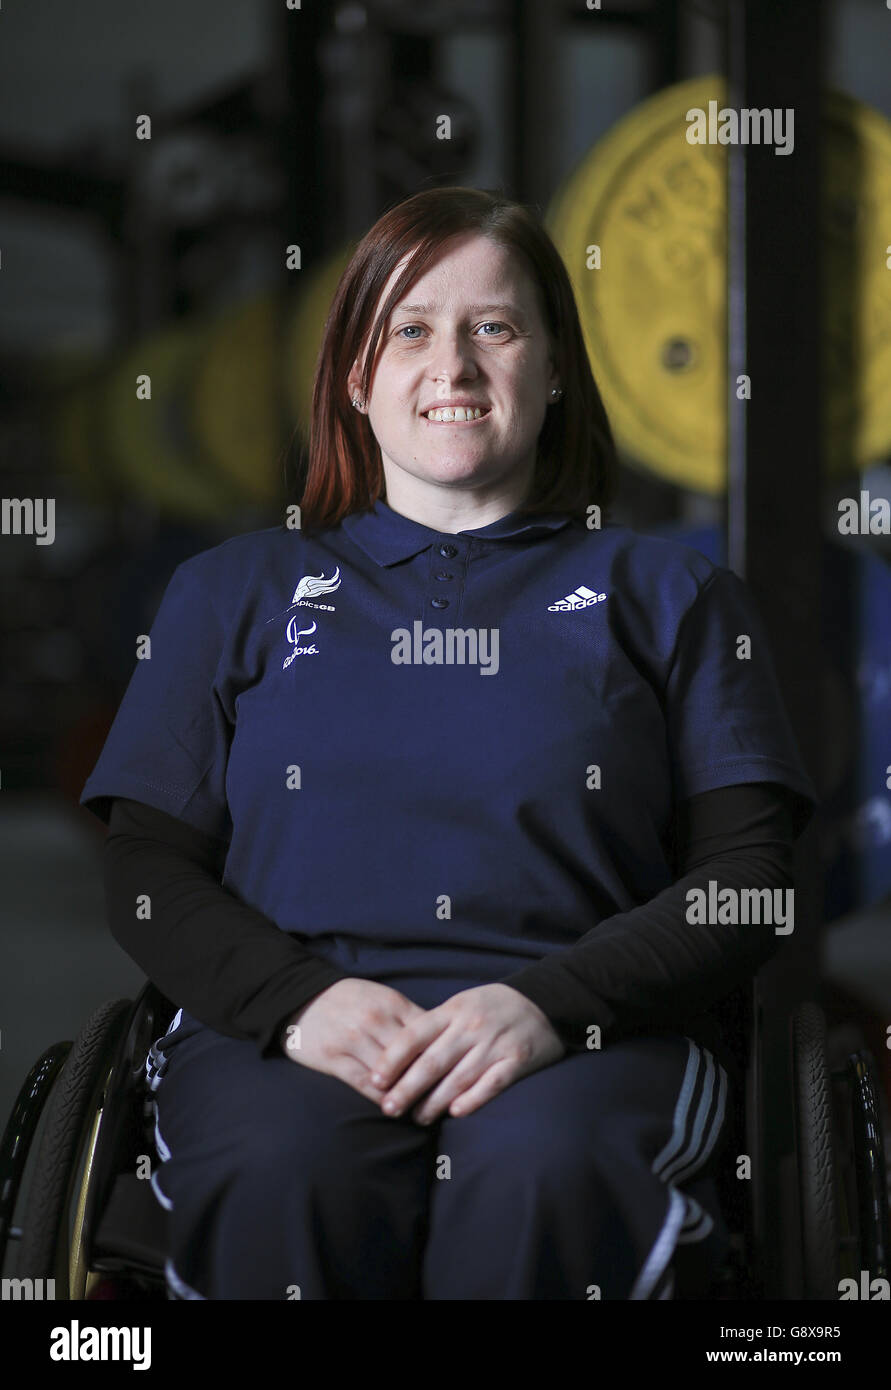 L'annonce de l'équipe de dynamophilie ParalympicsGB - Université de Loughborough Banque D'Images